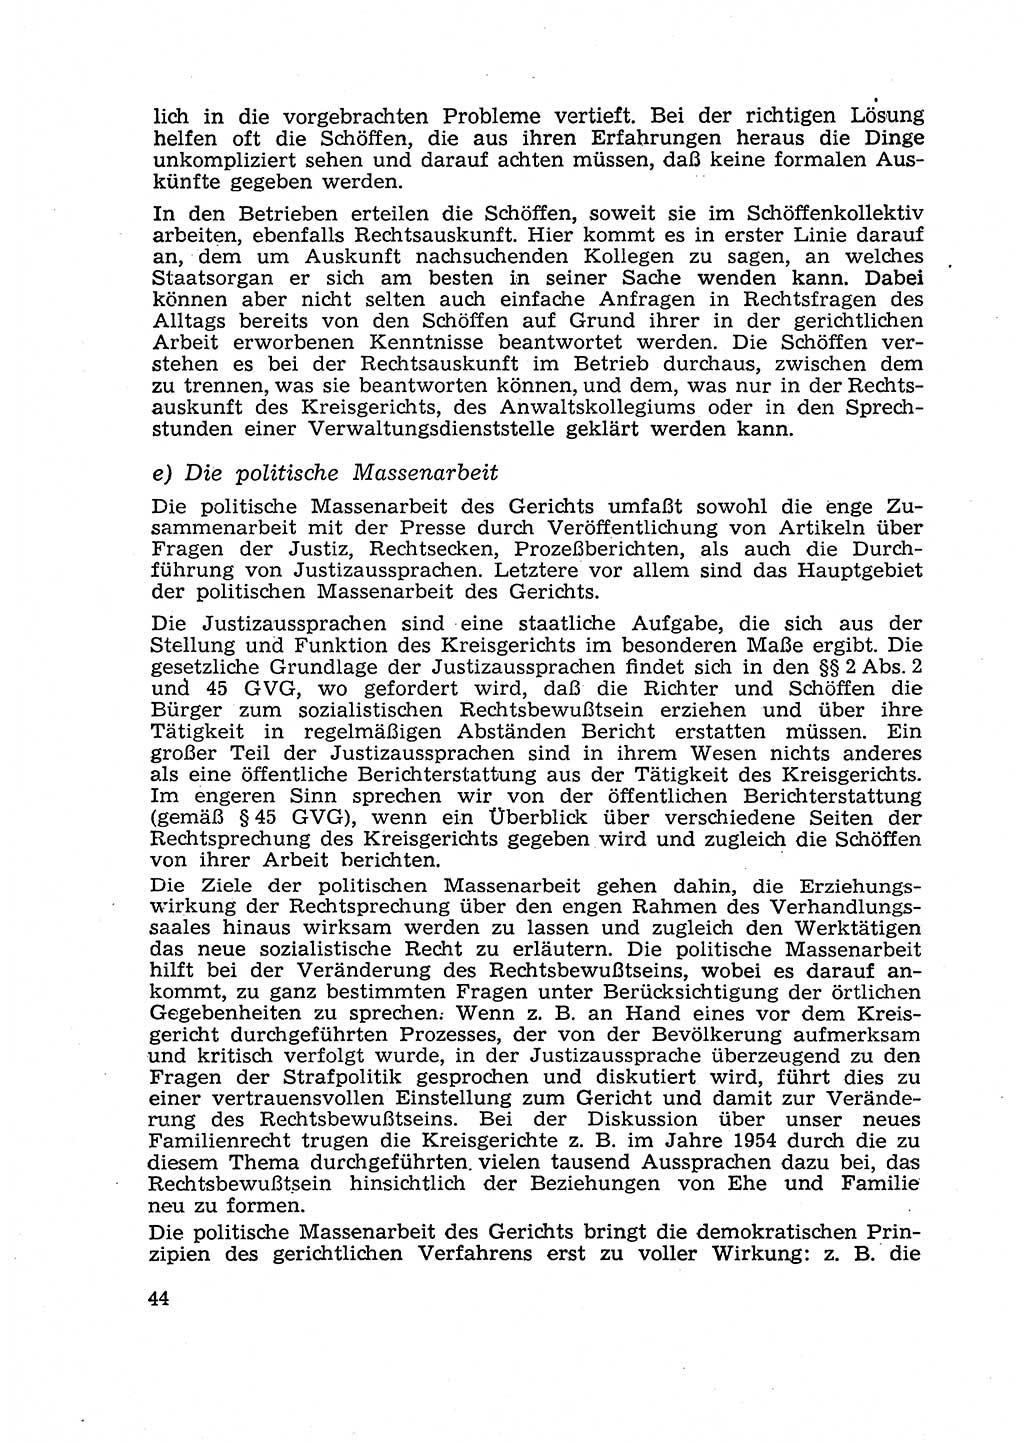 Gericht und Rechtsprechung in der Deutschen Demokratischen Republik (DDR) 1956, Seite 44 (Ger. Rechtspr. DDR 1956, S. 44)